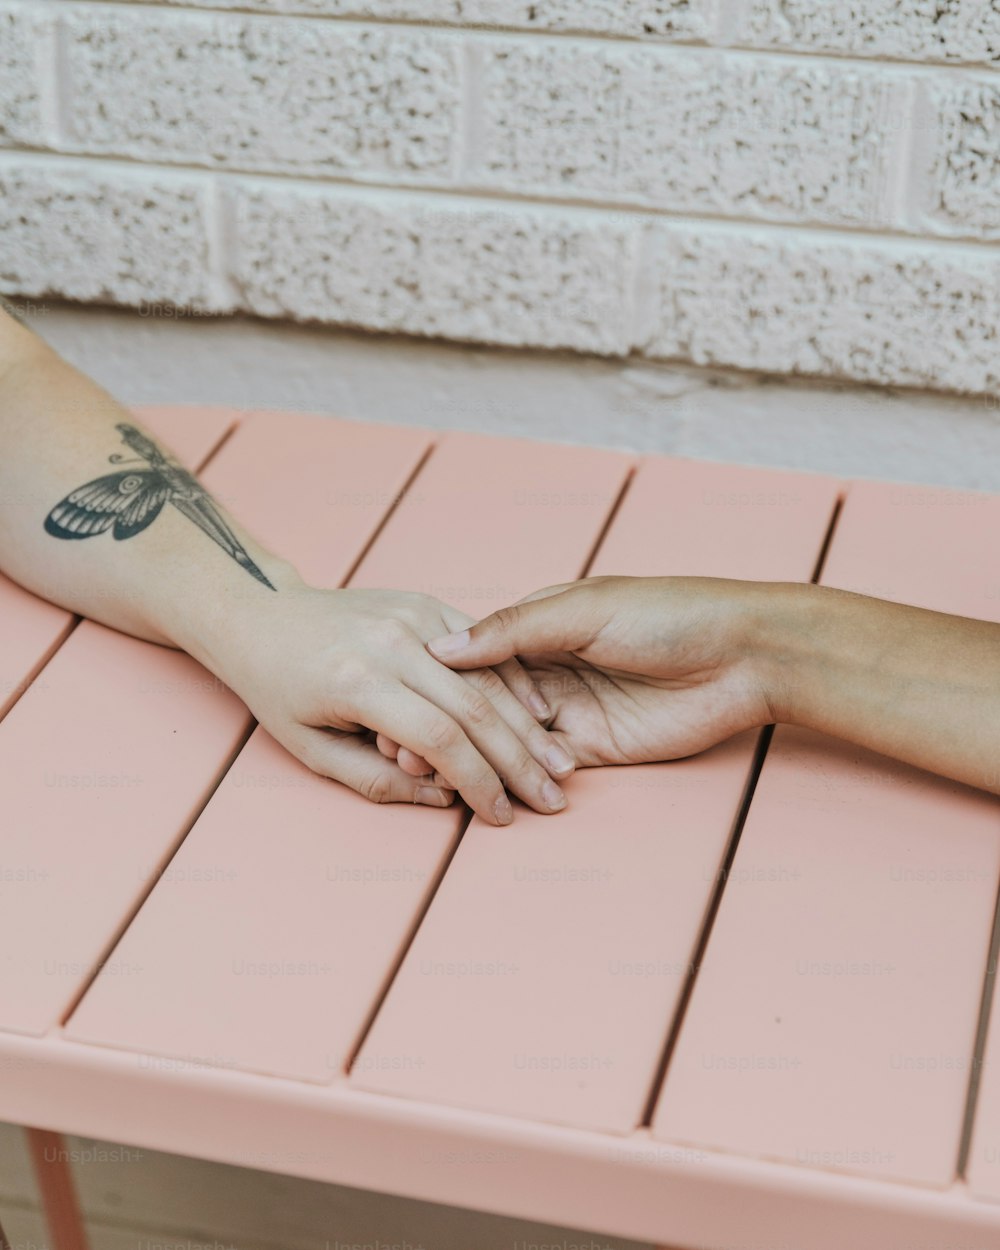 Una persona con un tatuaggio di libellula sul braccio seduta su una panchina rosa